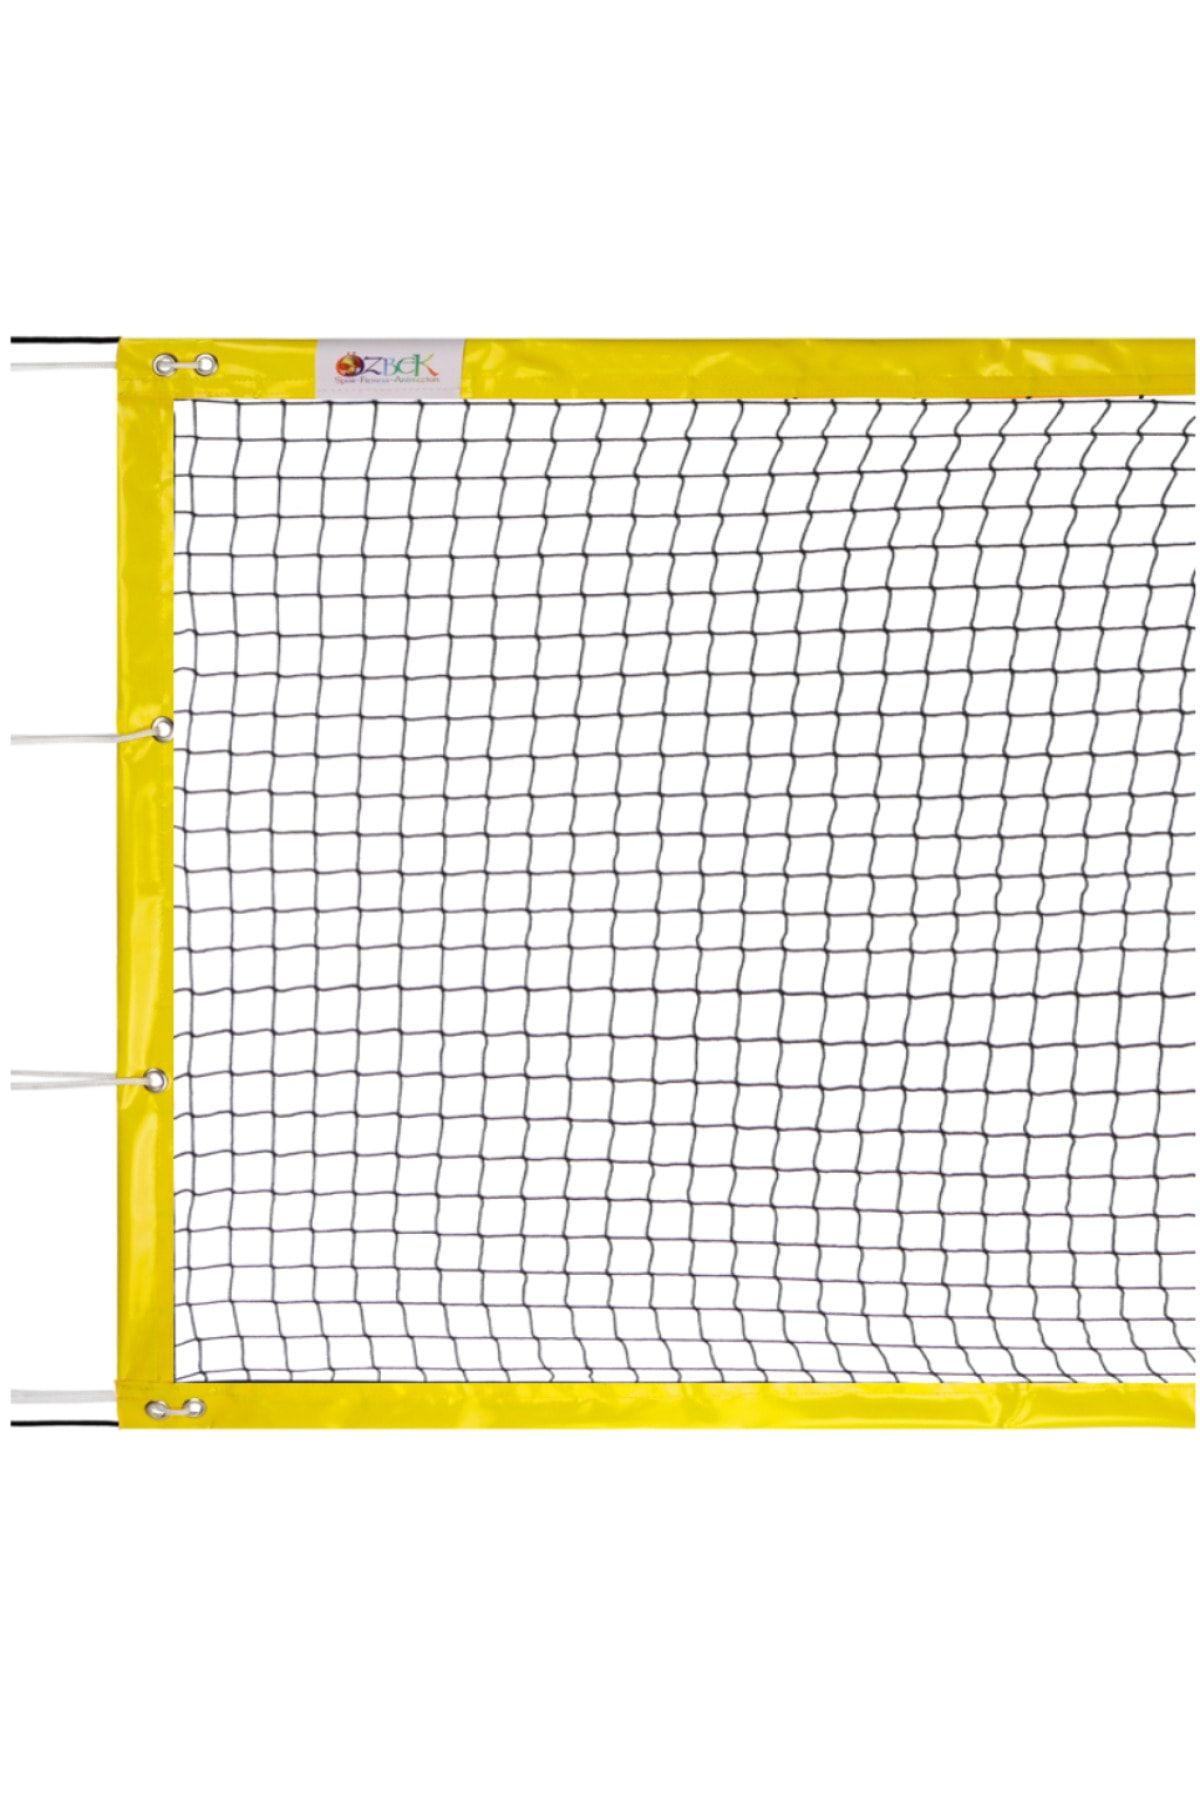 ÖZBEK 70cm * 5.00mt - Mini Tenis Ağı - Voleybol - Ayak Tenisi Filesi - Profesyonel Sarı